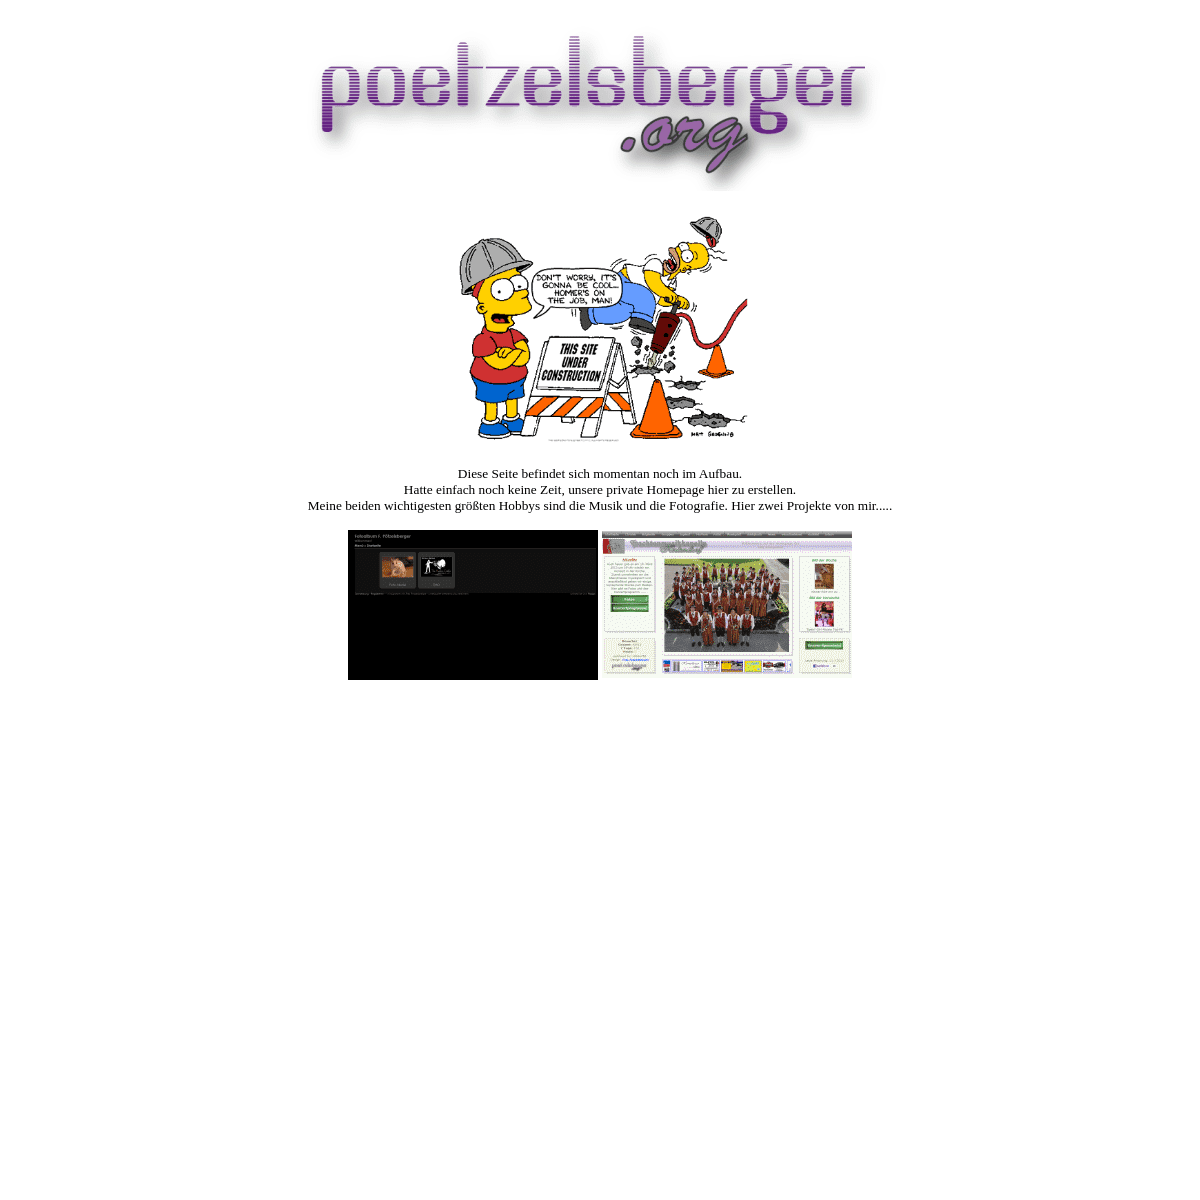 A complete backup of poetzelsberger.org